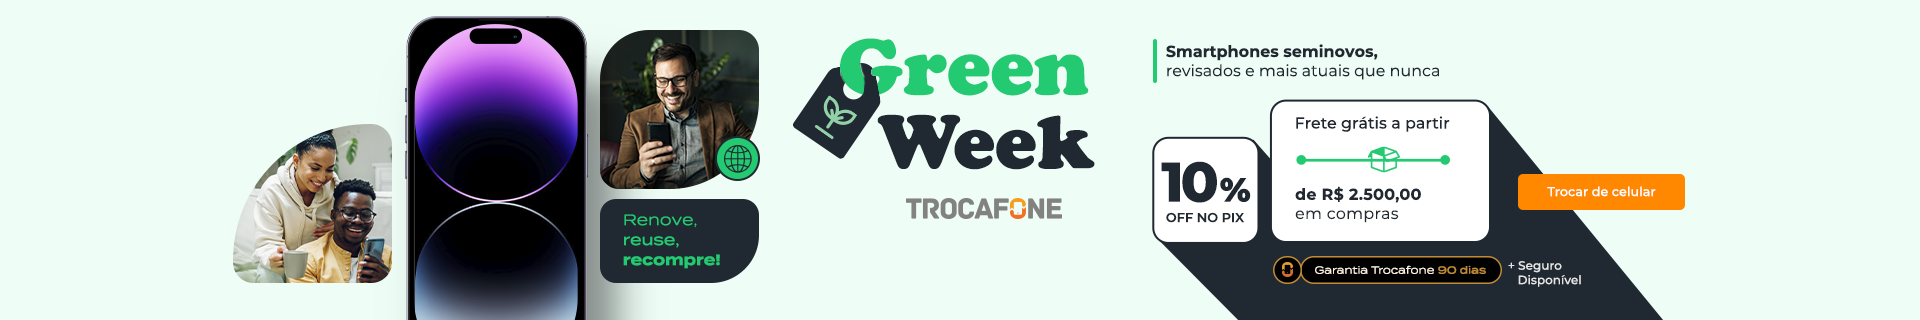 Green Week Trocafone